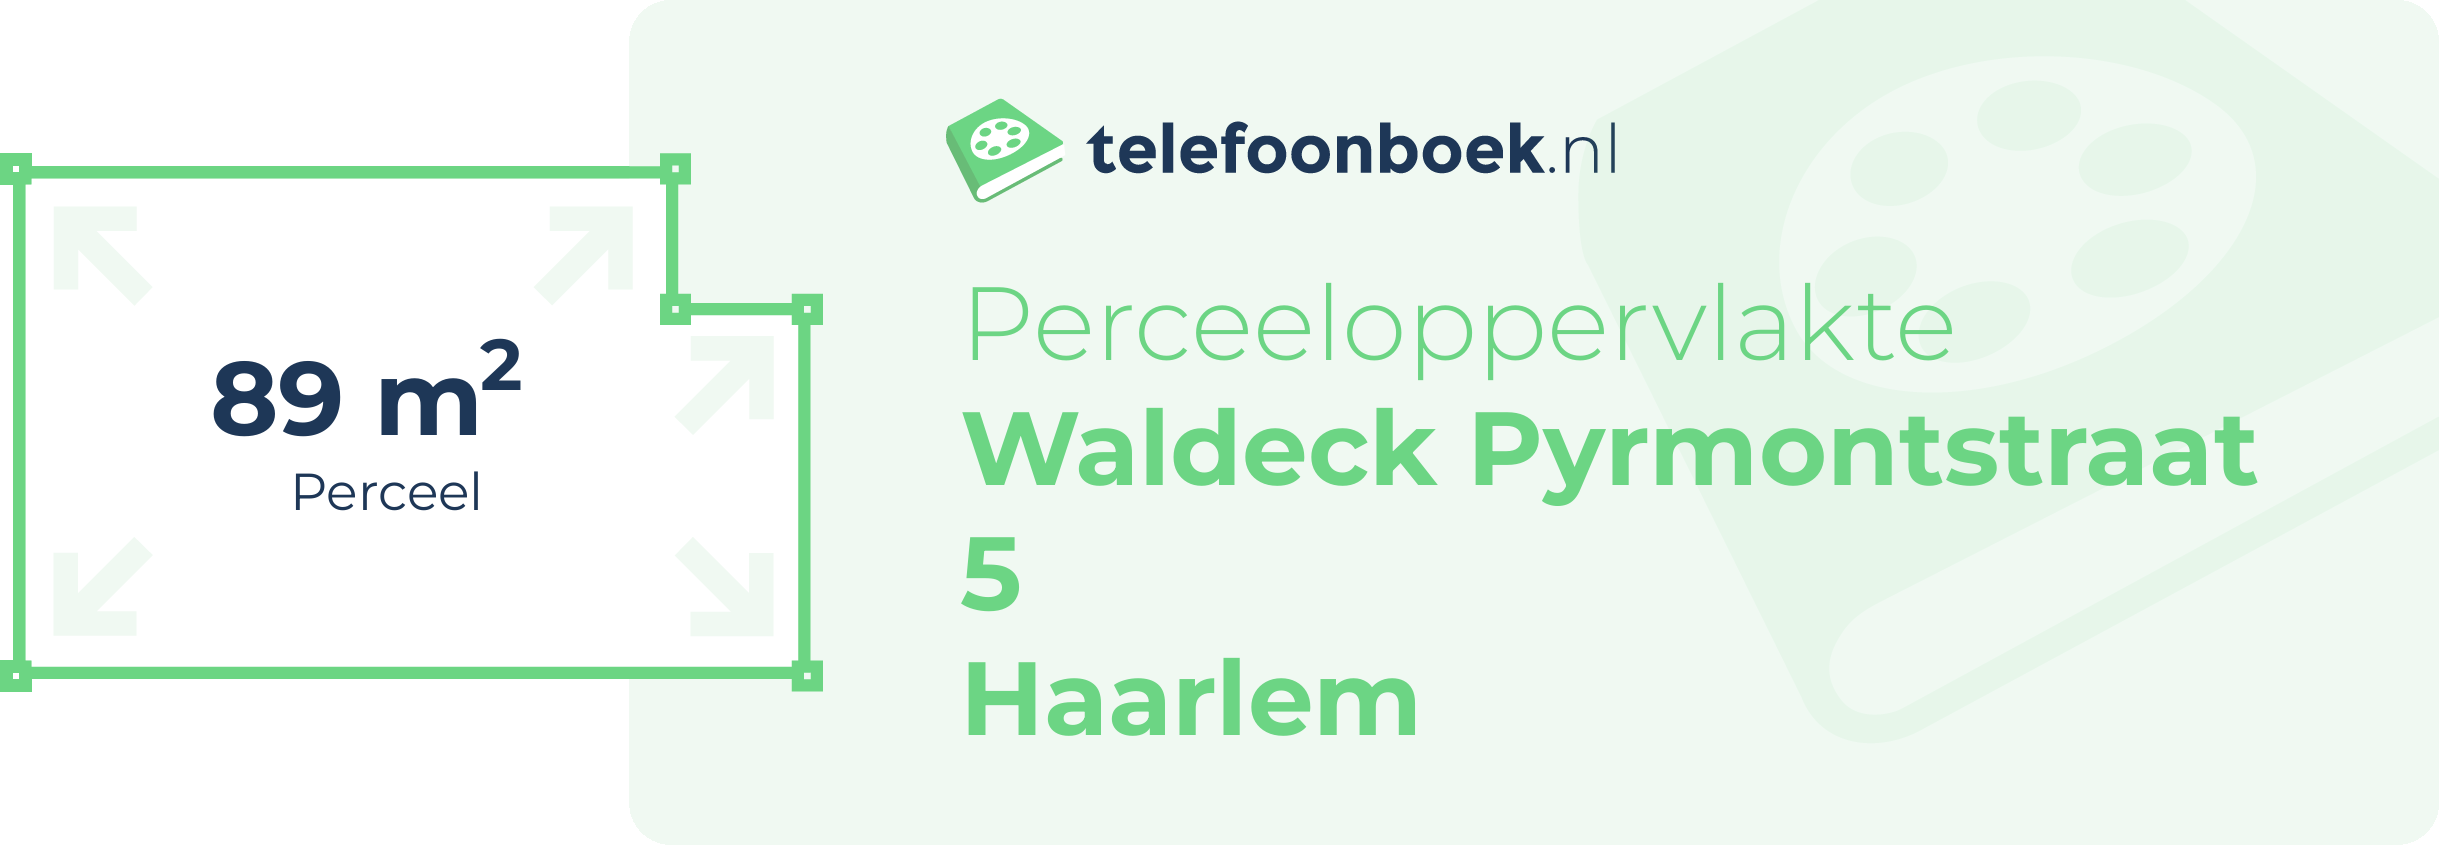 Perceeloppervlakte Waldeck Pyrmontstraat 5 Haarlem